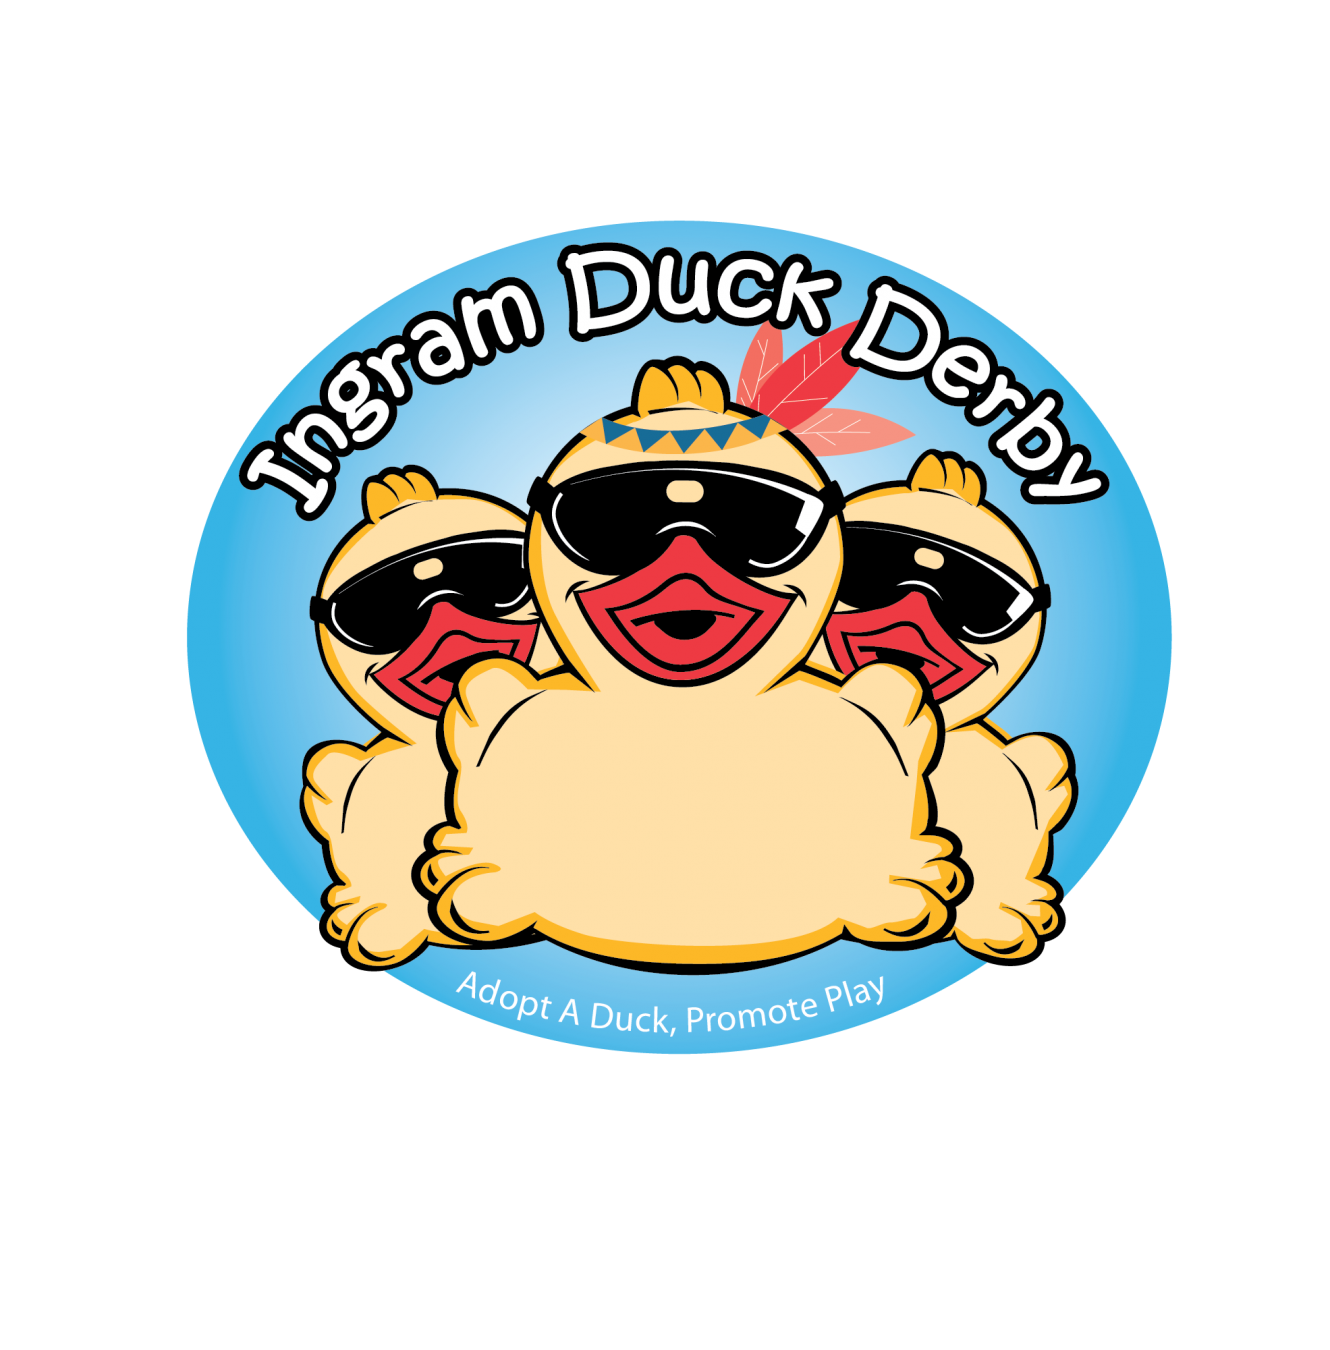 Ingram Duck Derby